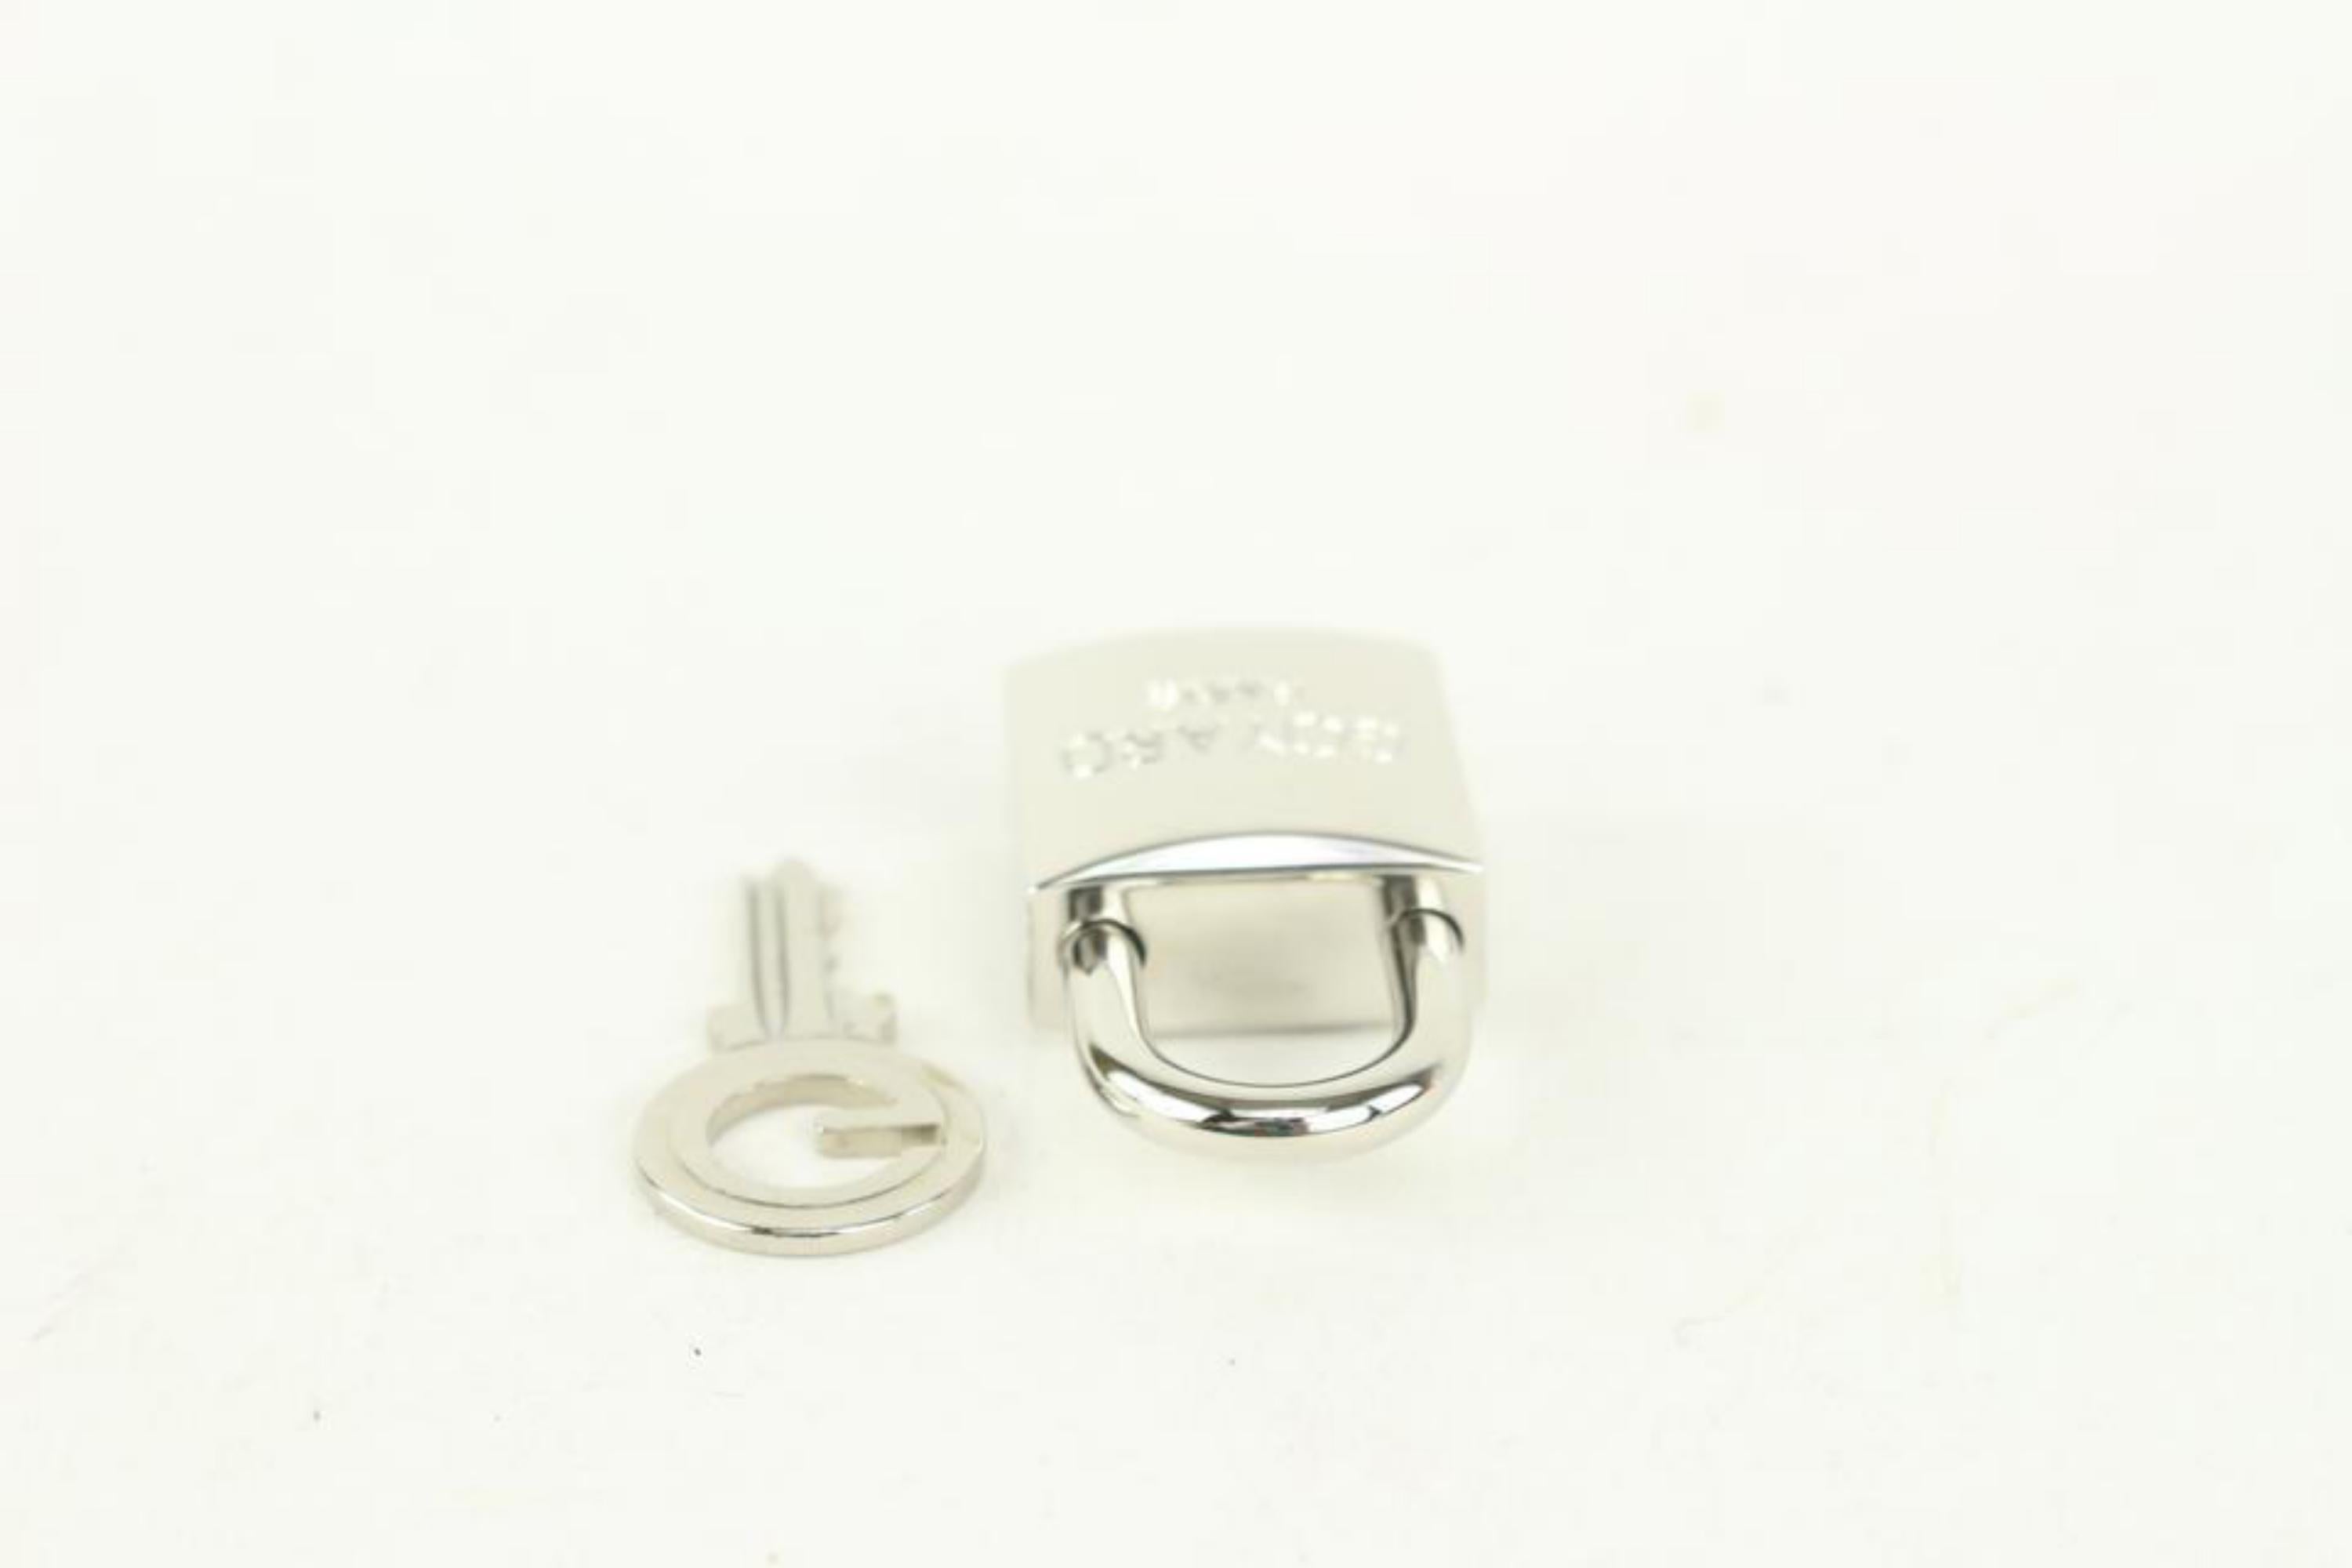 Goyard Silver Lock and Key Set Cadena Bag Charm 1012gy30 6